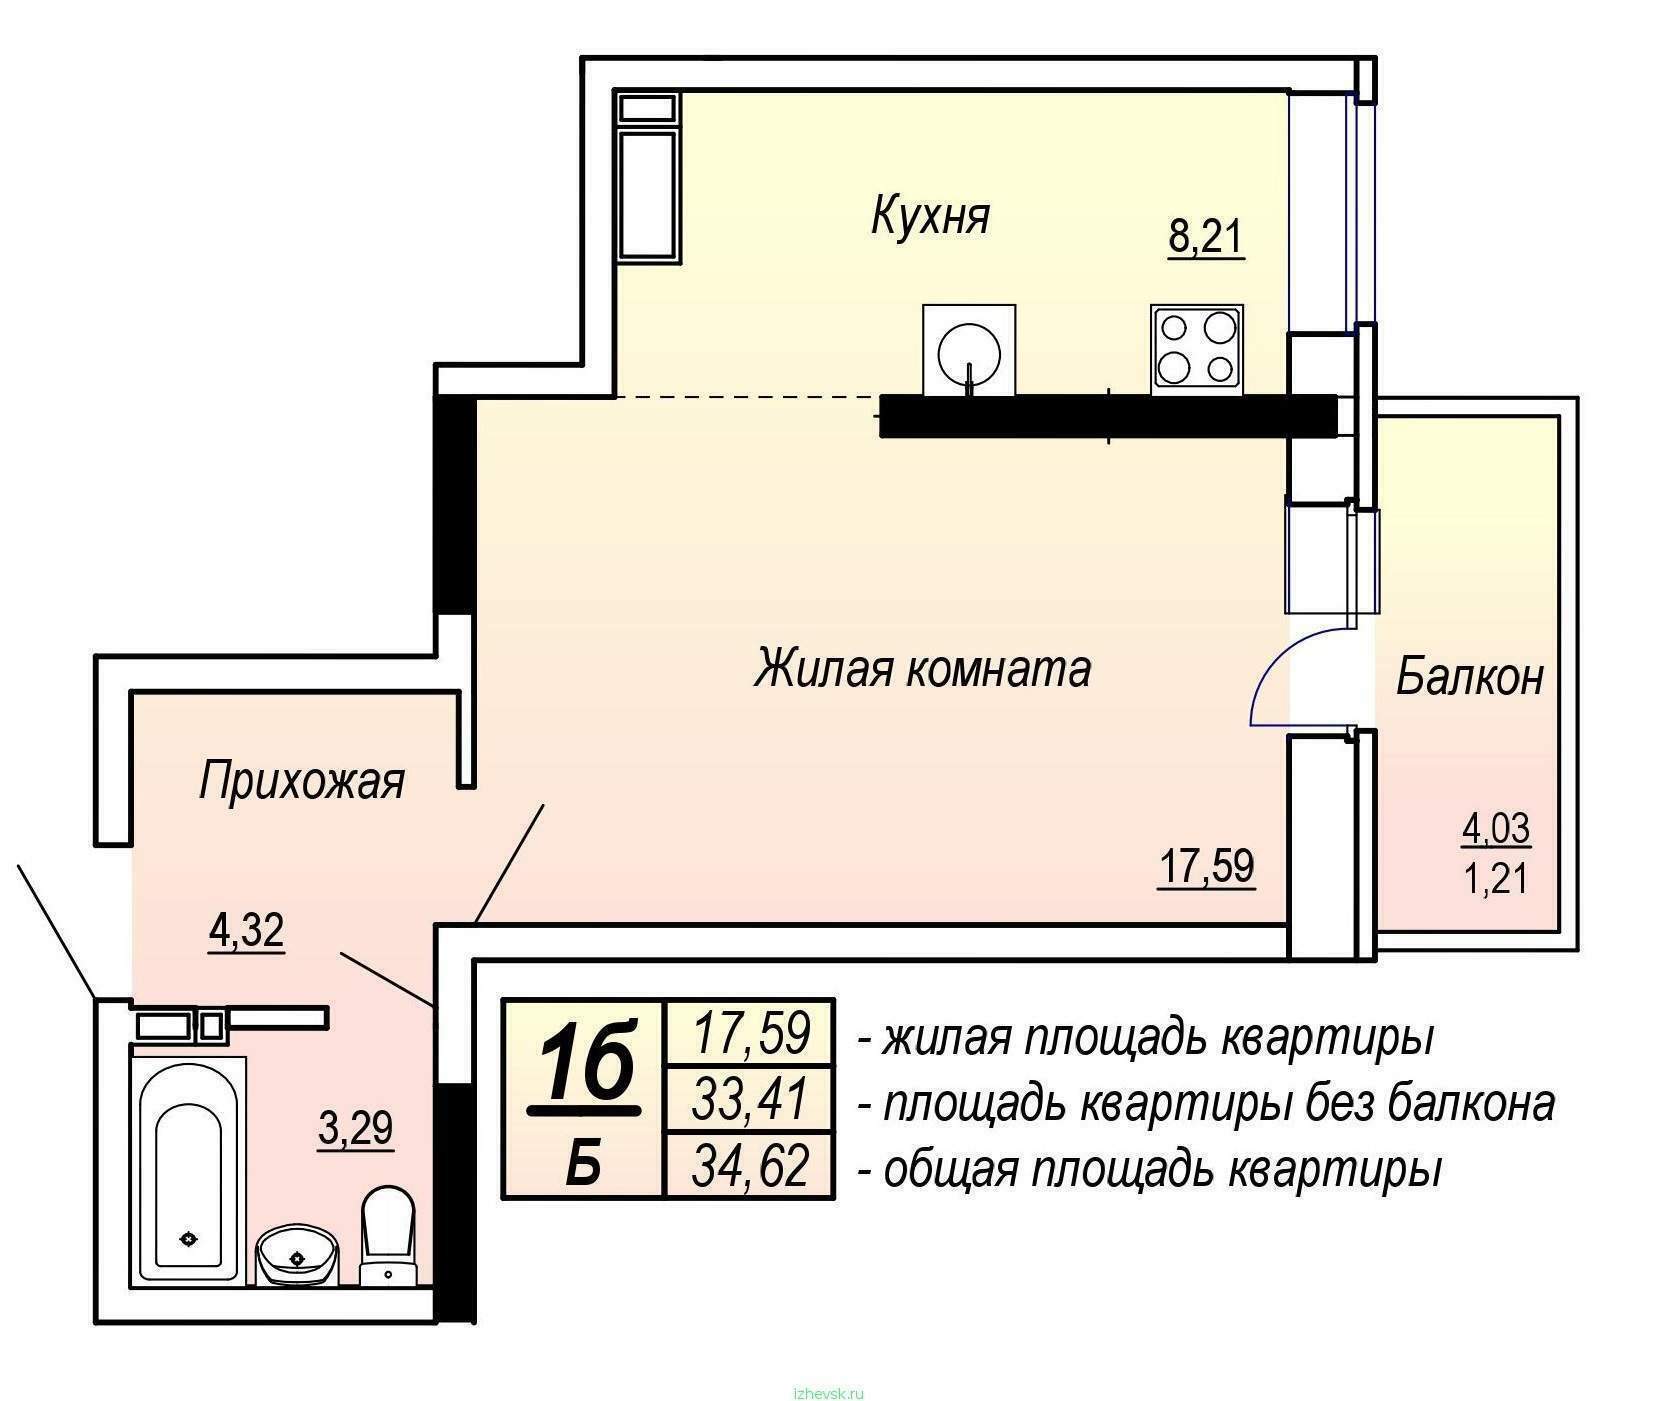 Общая площадь жилого помещения состоит. Общая площадь квартиры. Жилая площадь квартиры и общая площадь. Жилая площадь квартиры это. Общая площадь квартиры на плане.